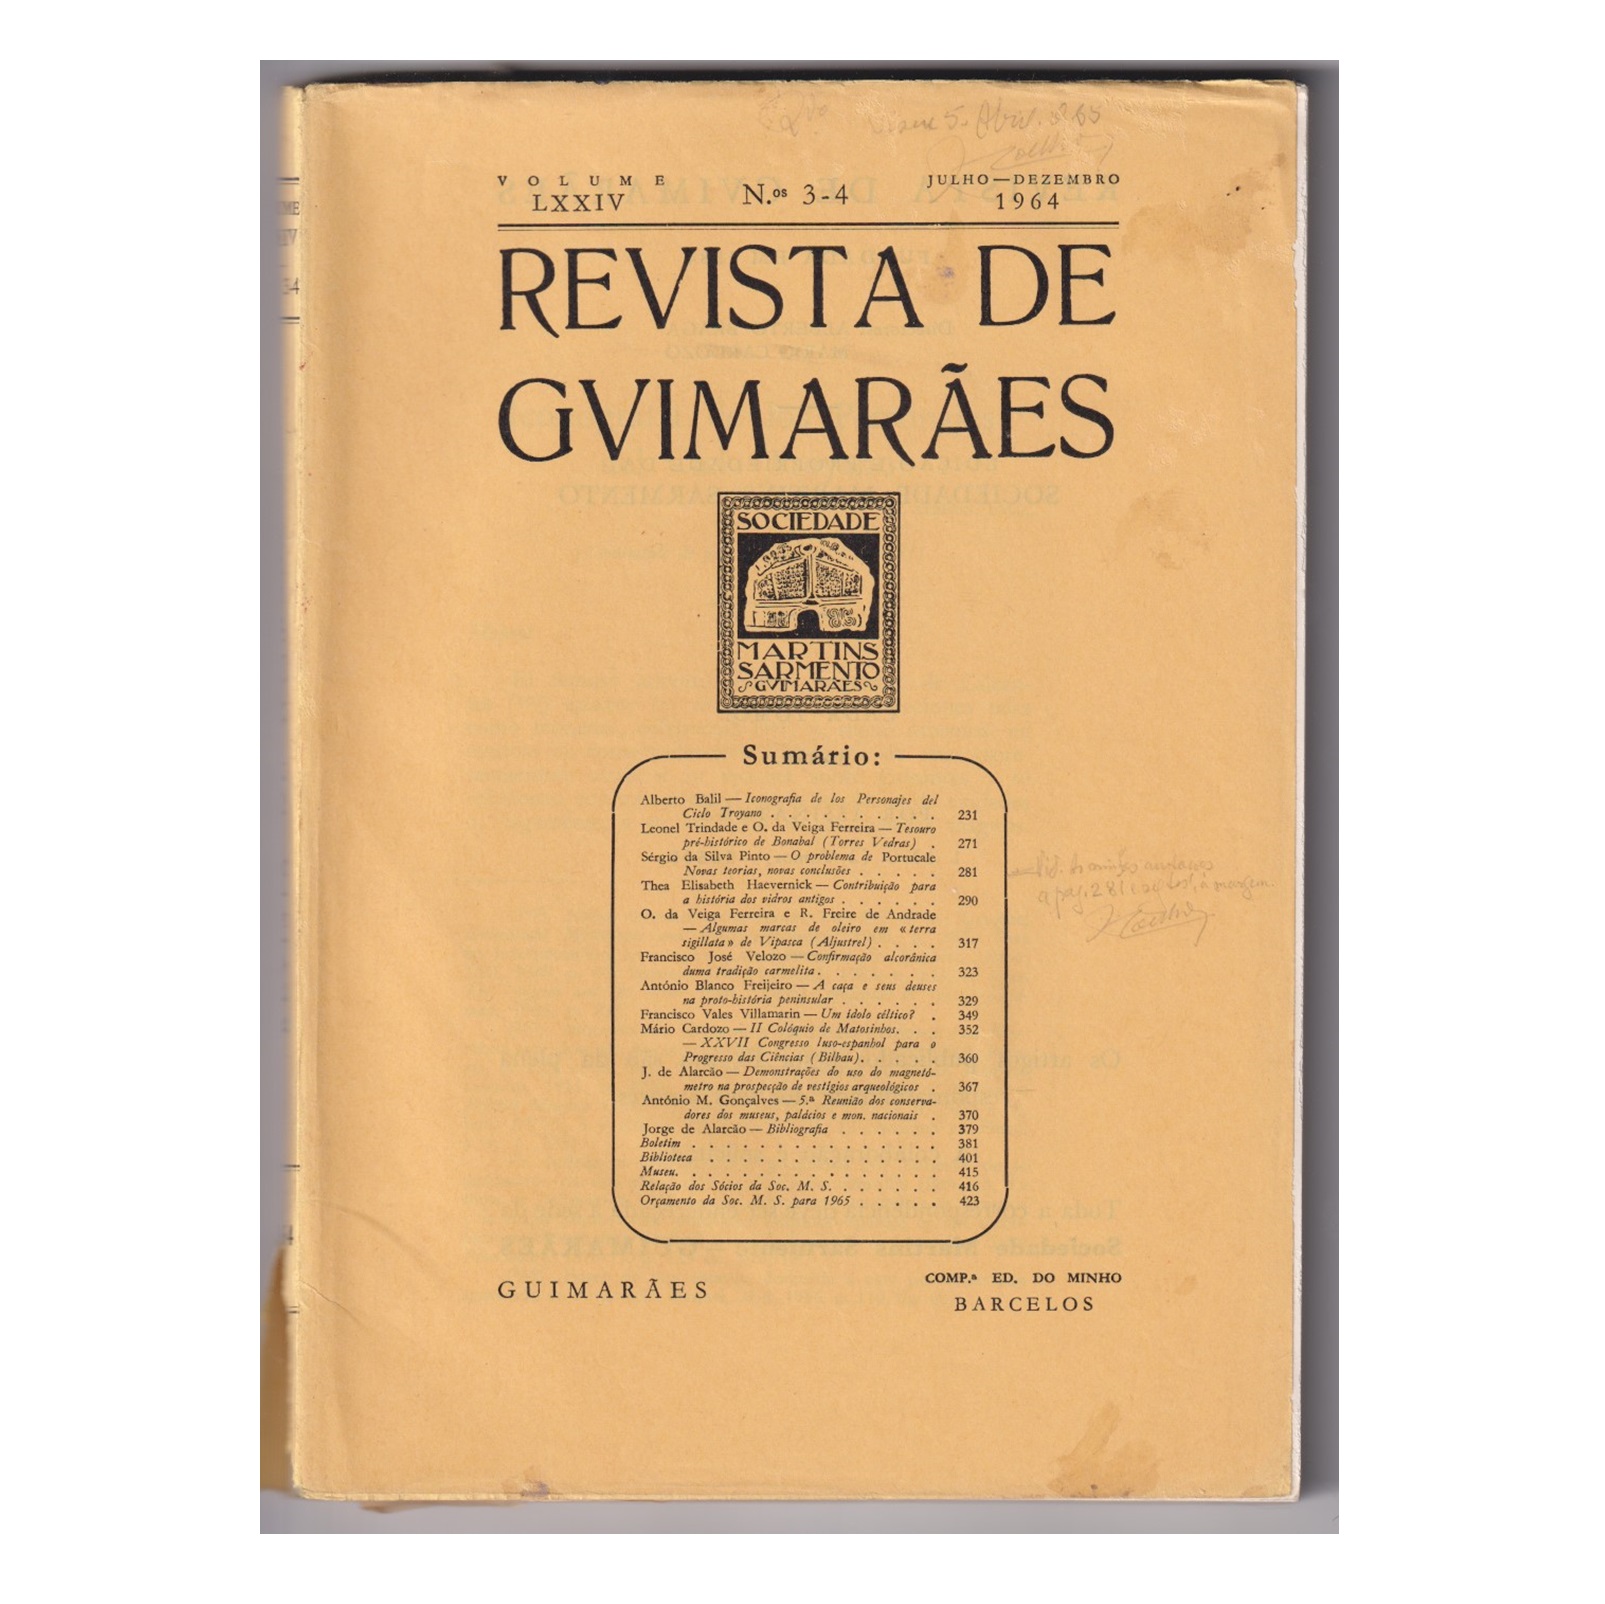 REVISTA DE GUIMARÃES. VOL. LXXIV. N.º 3-4, 1964